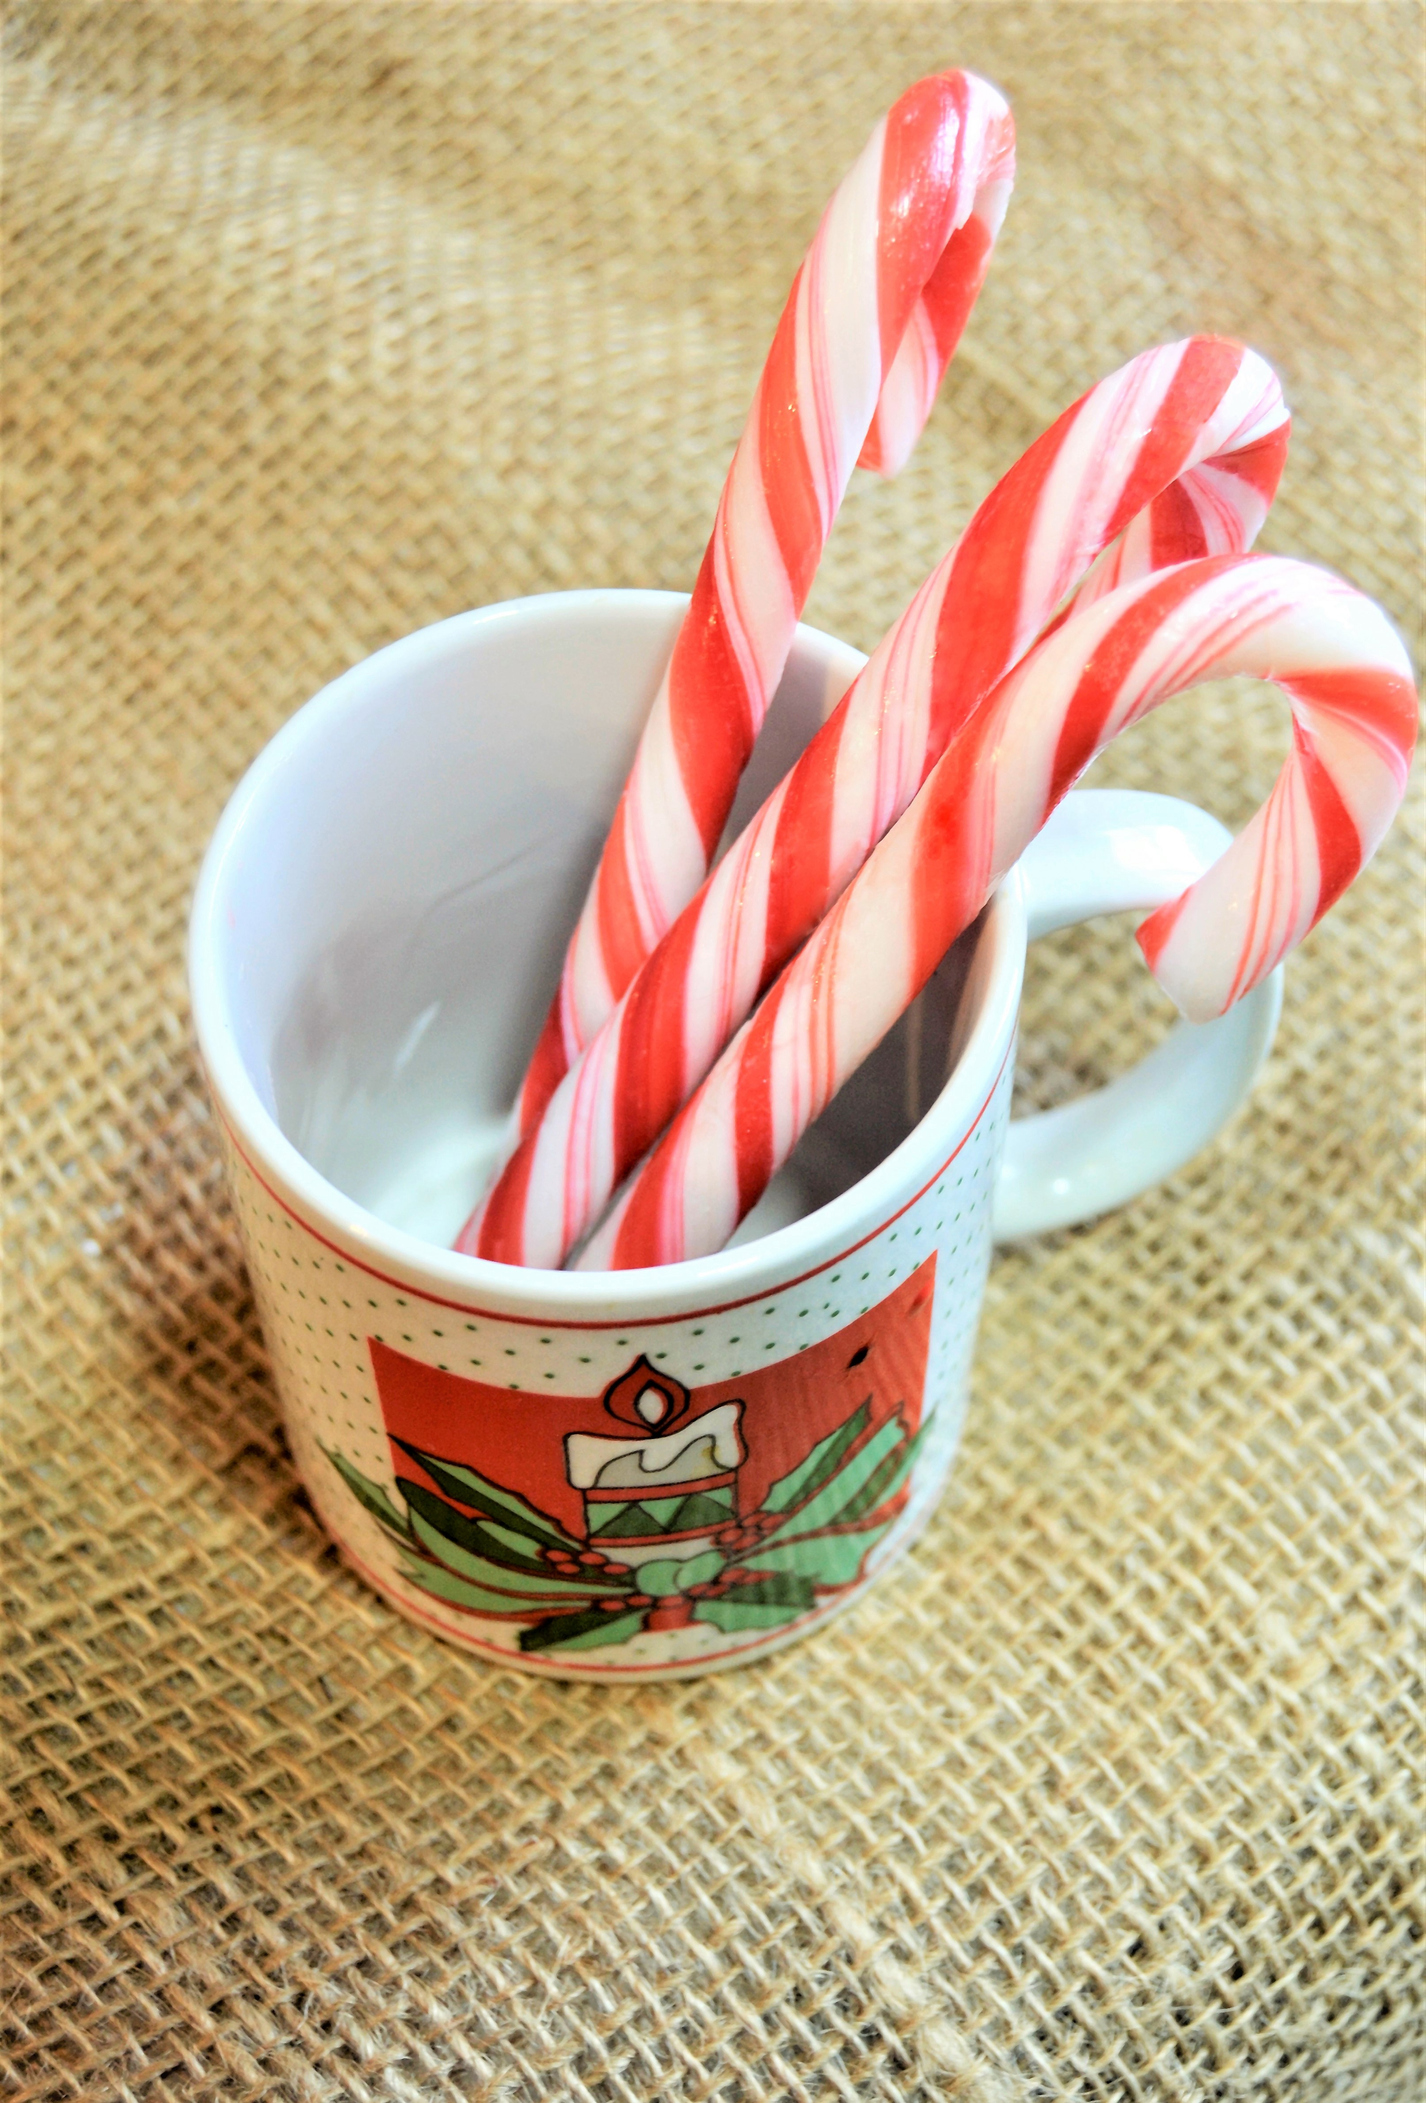 Candy Cane on Christmas mug